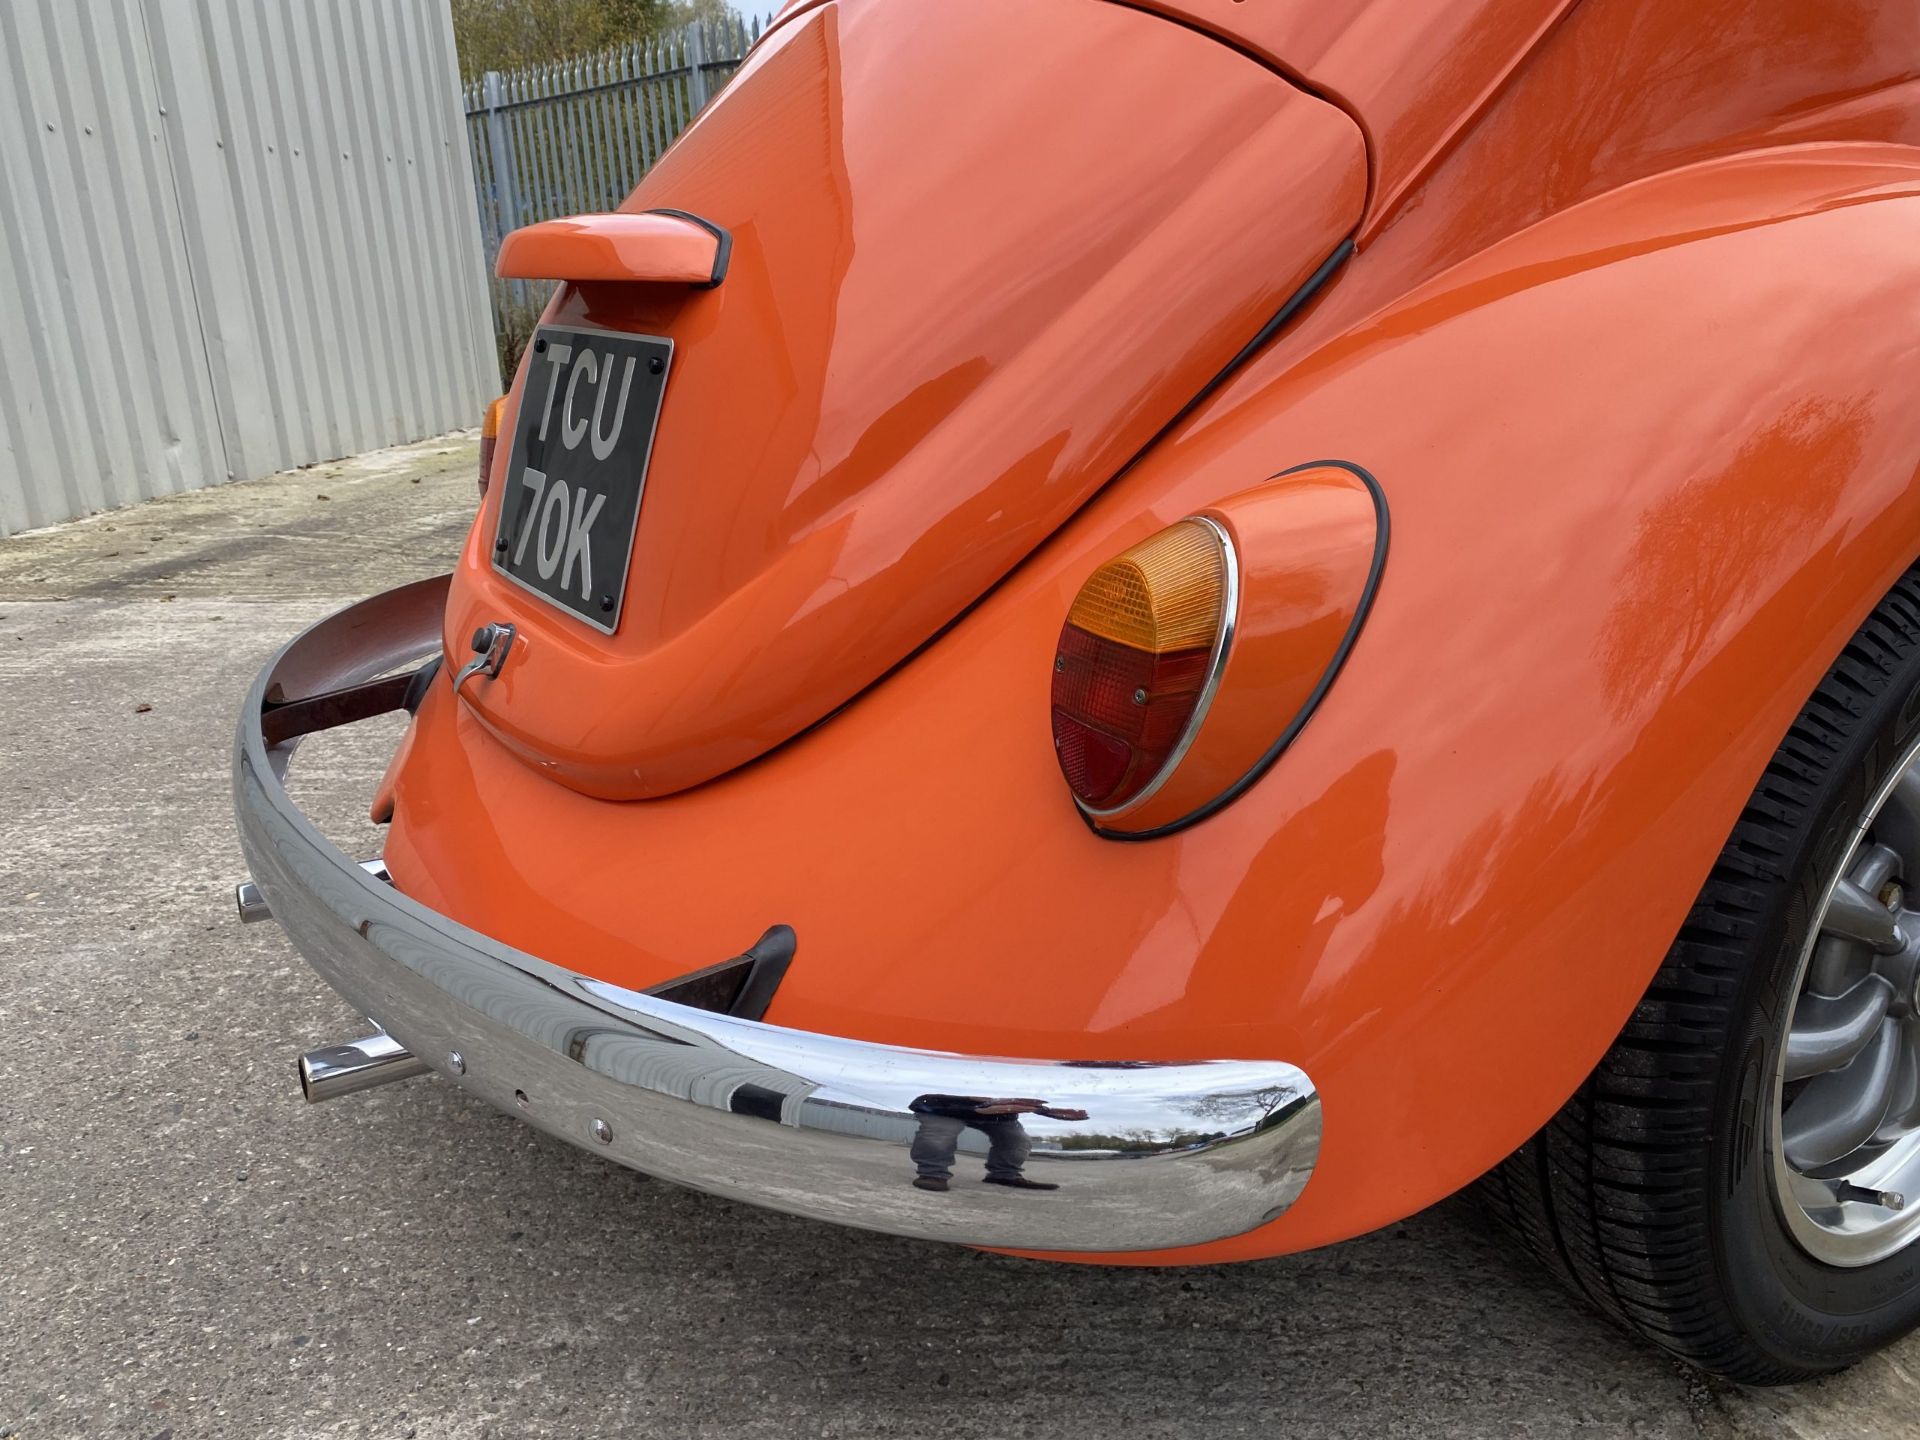 Volkswagen Beetle - Image 17 of 51